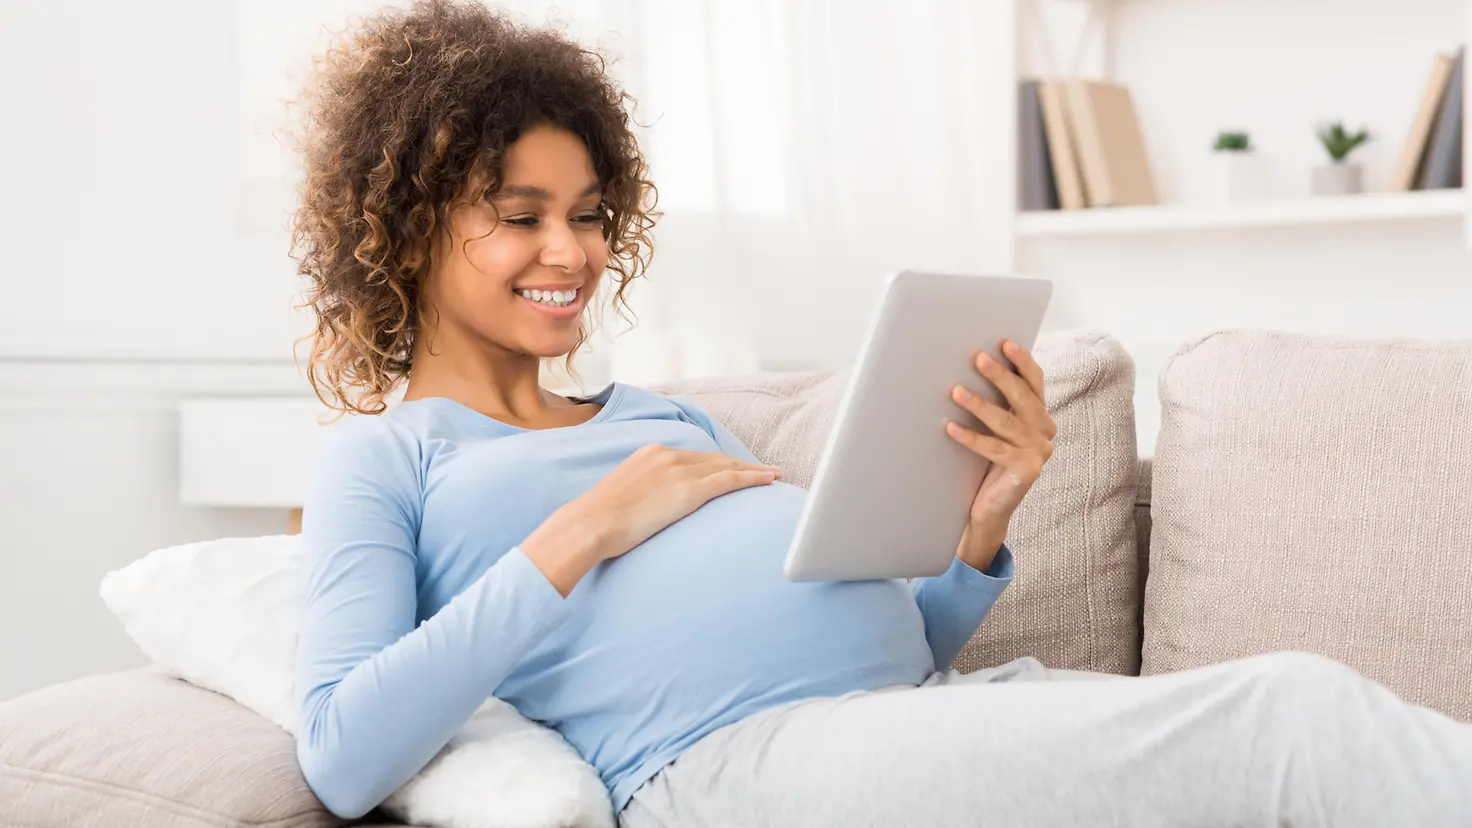 Eine schwangere Frau liegt auf dem Sofa und schaut auf ein Tablet, das sie in ihrer Hand hält.